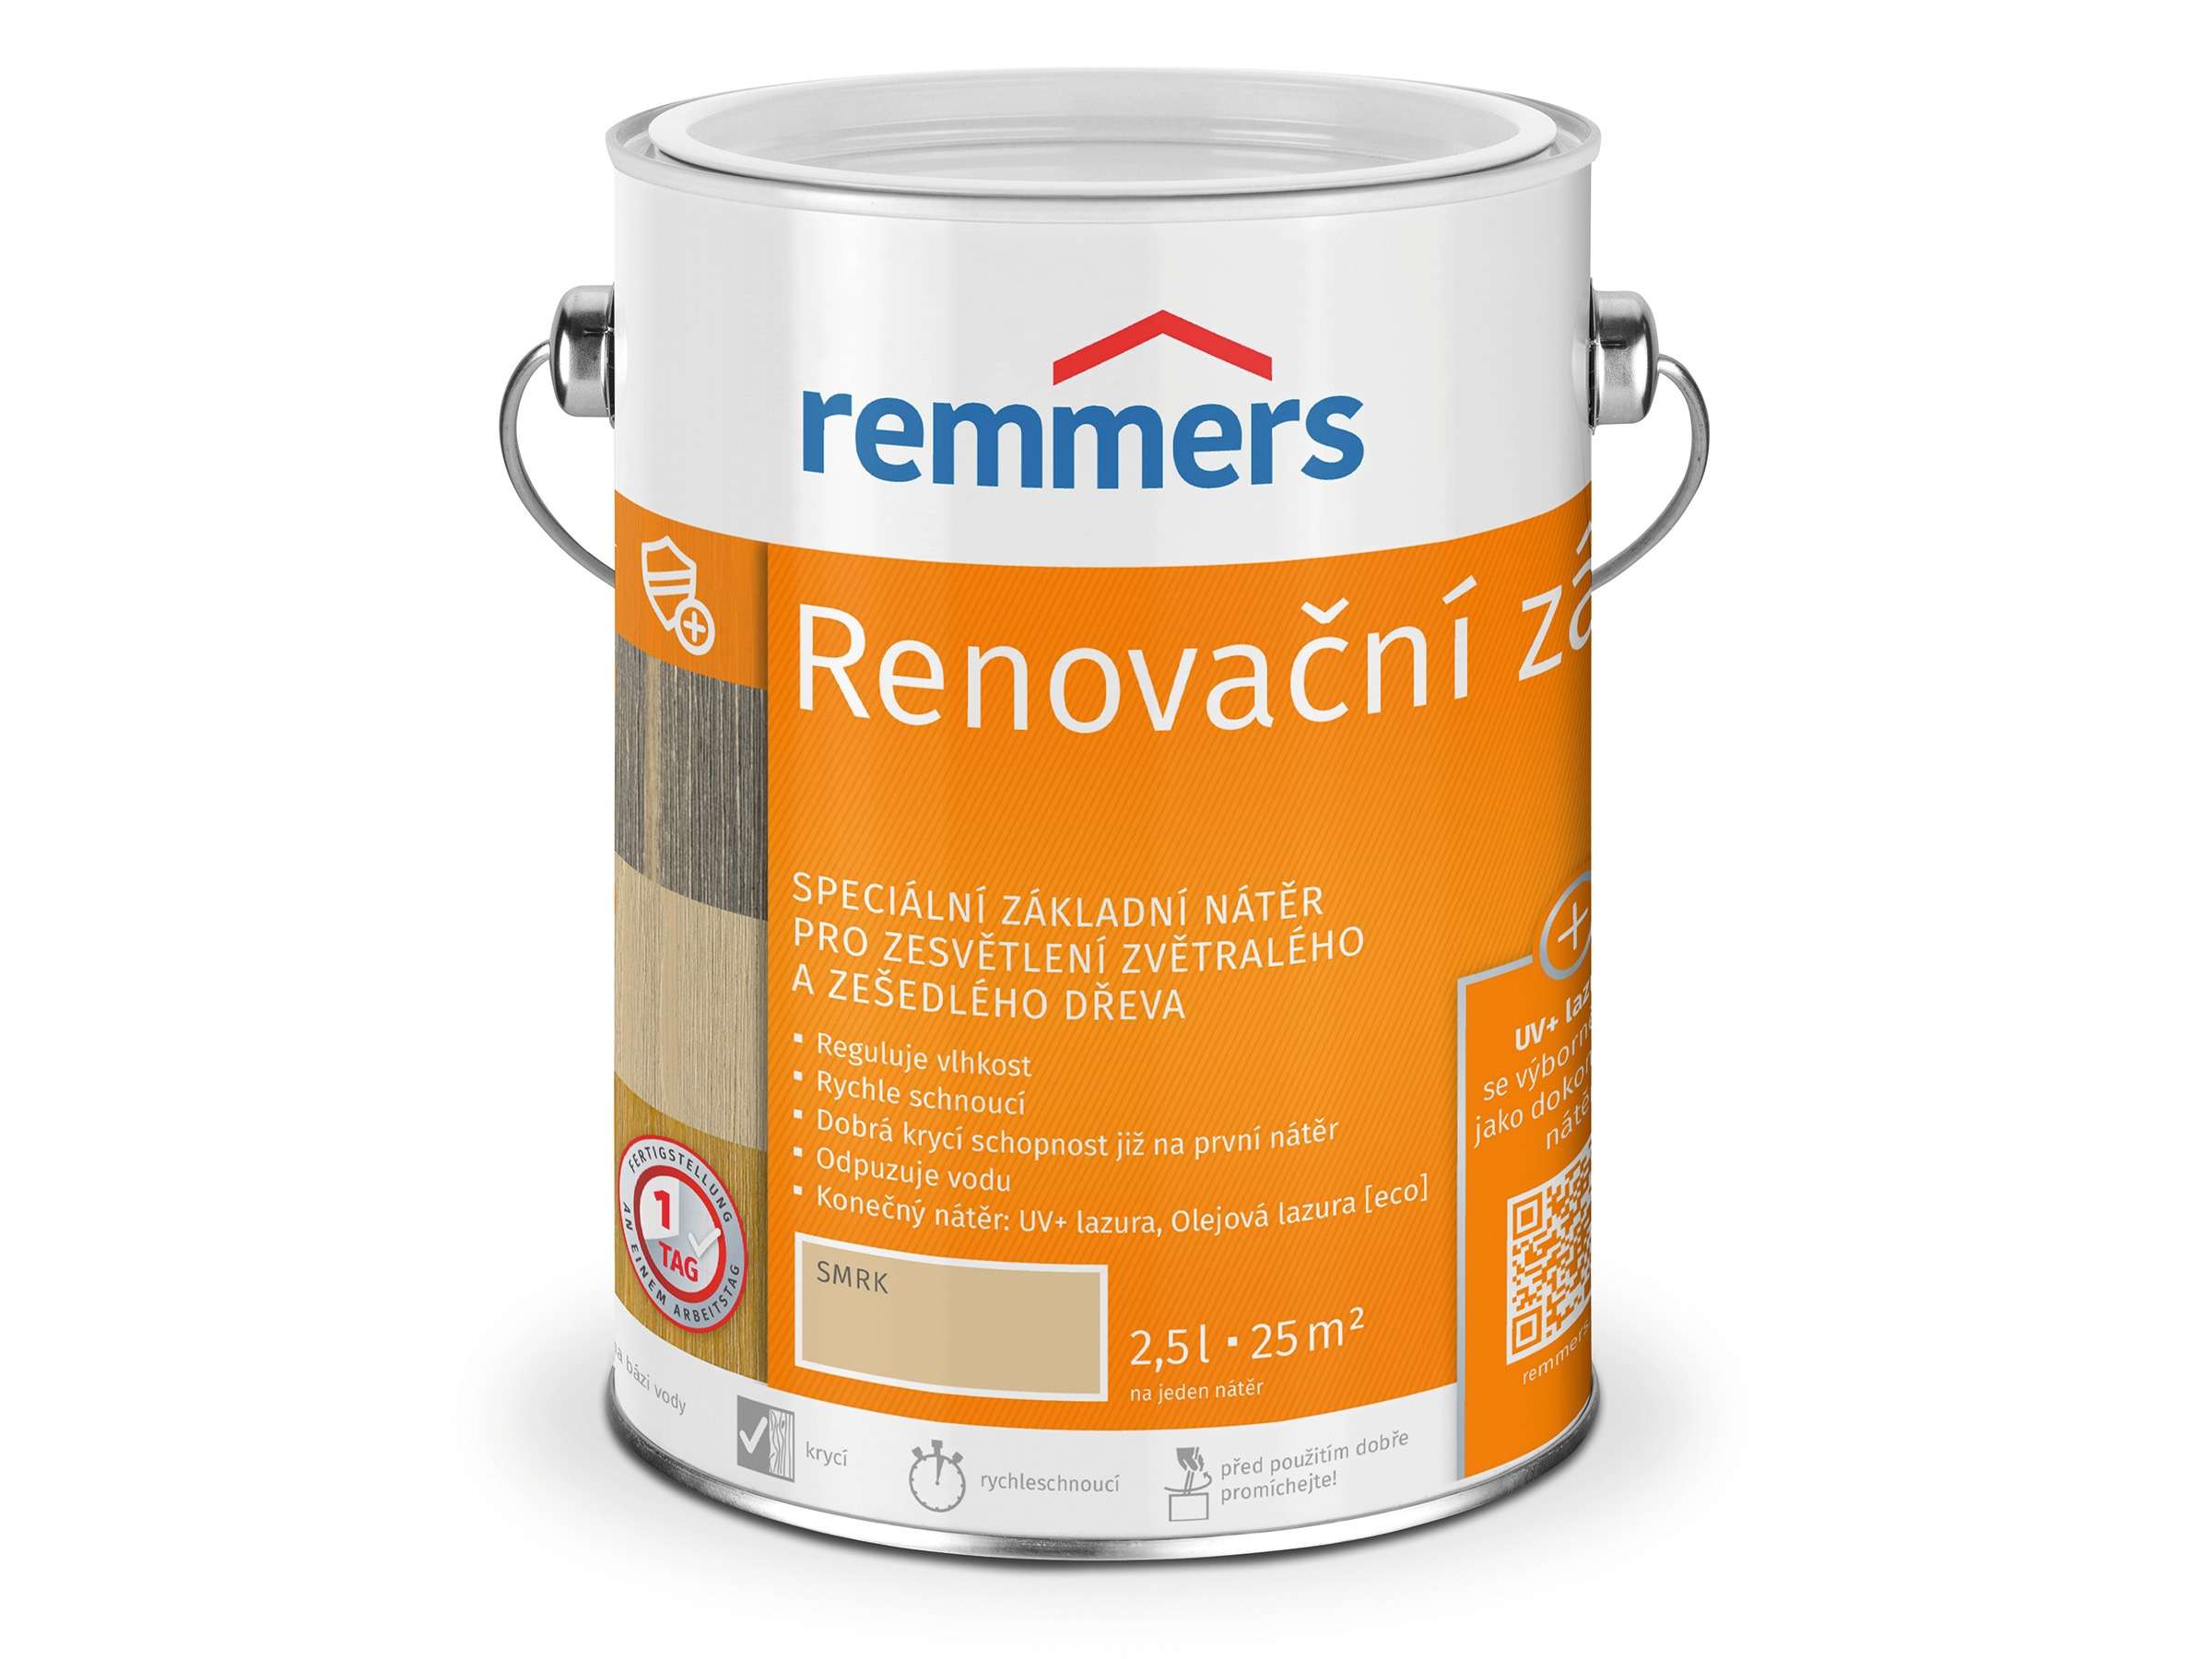 Remmers Renovační základ * Speciální renovační základní nátěr pro zesvětlení zvětralých / zešedlých dřev. 1